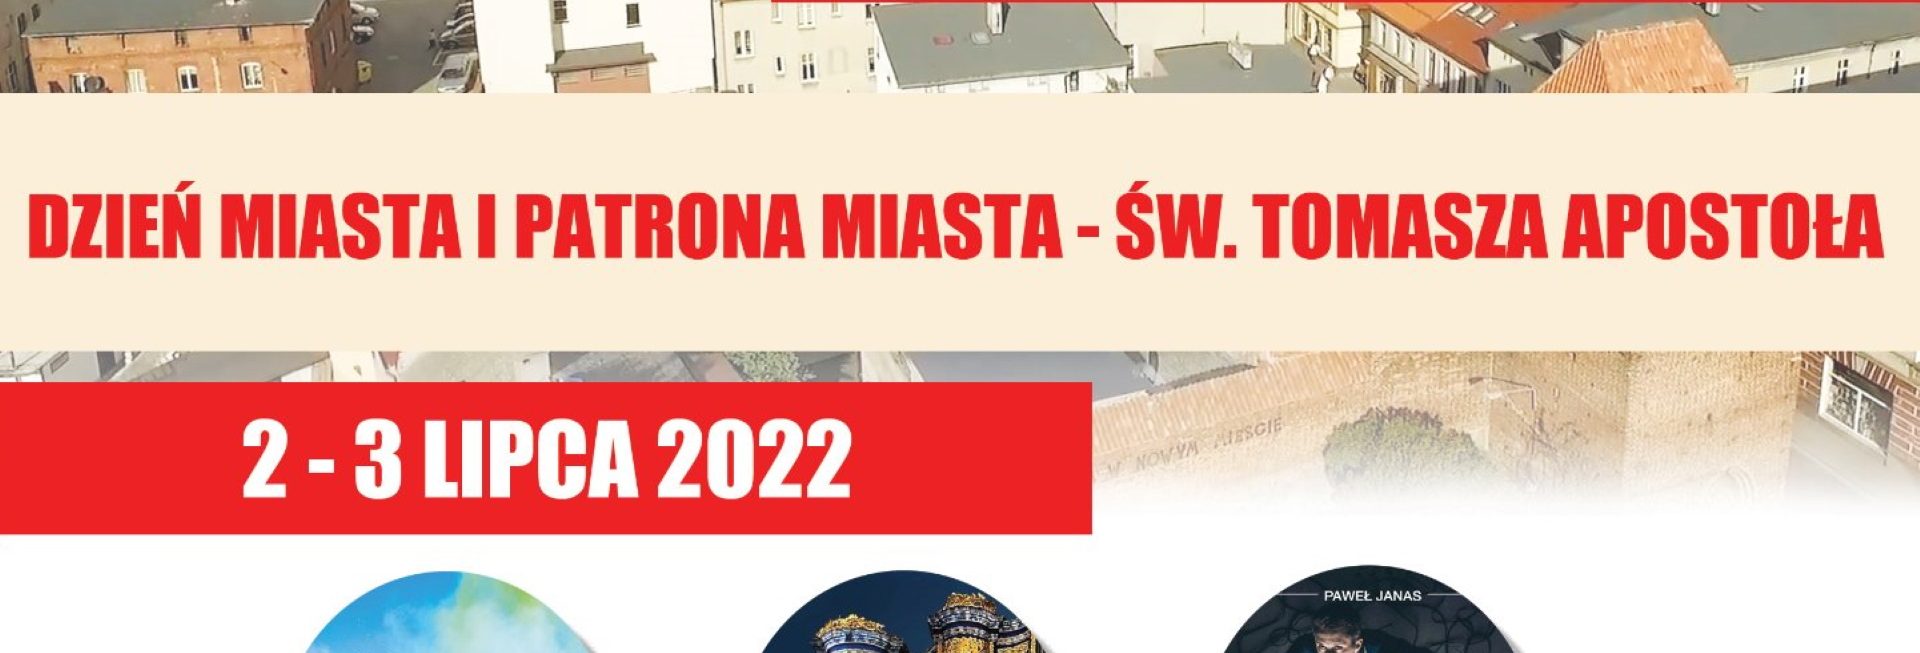 Plakat zapraszający do Nowego Miasta Lubawskiego na Dzień Miasta i Patrona Miasta - Św. Tomasza Apostoła Nowe Miasto Lubawskie 2022.